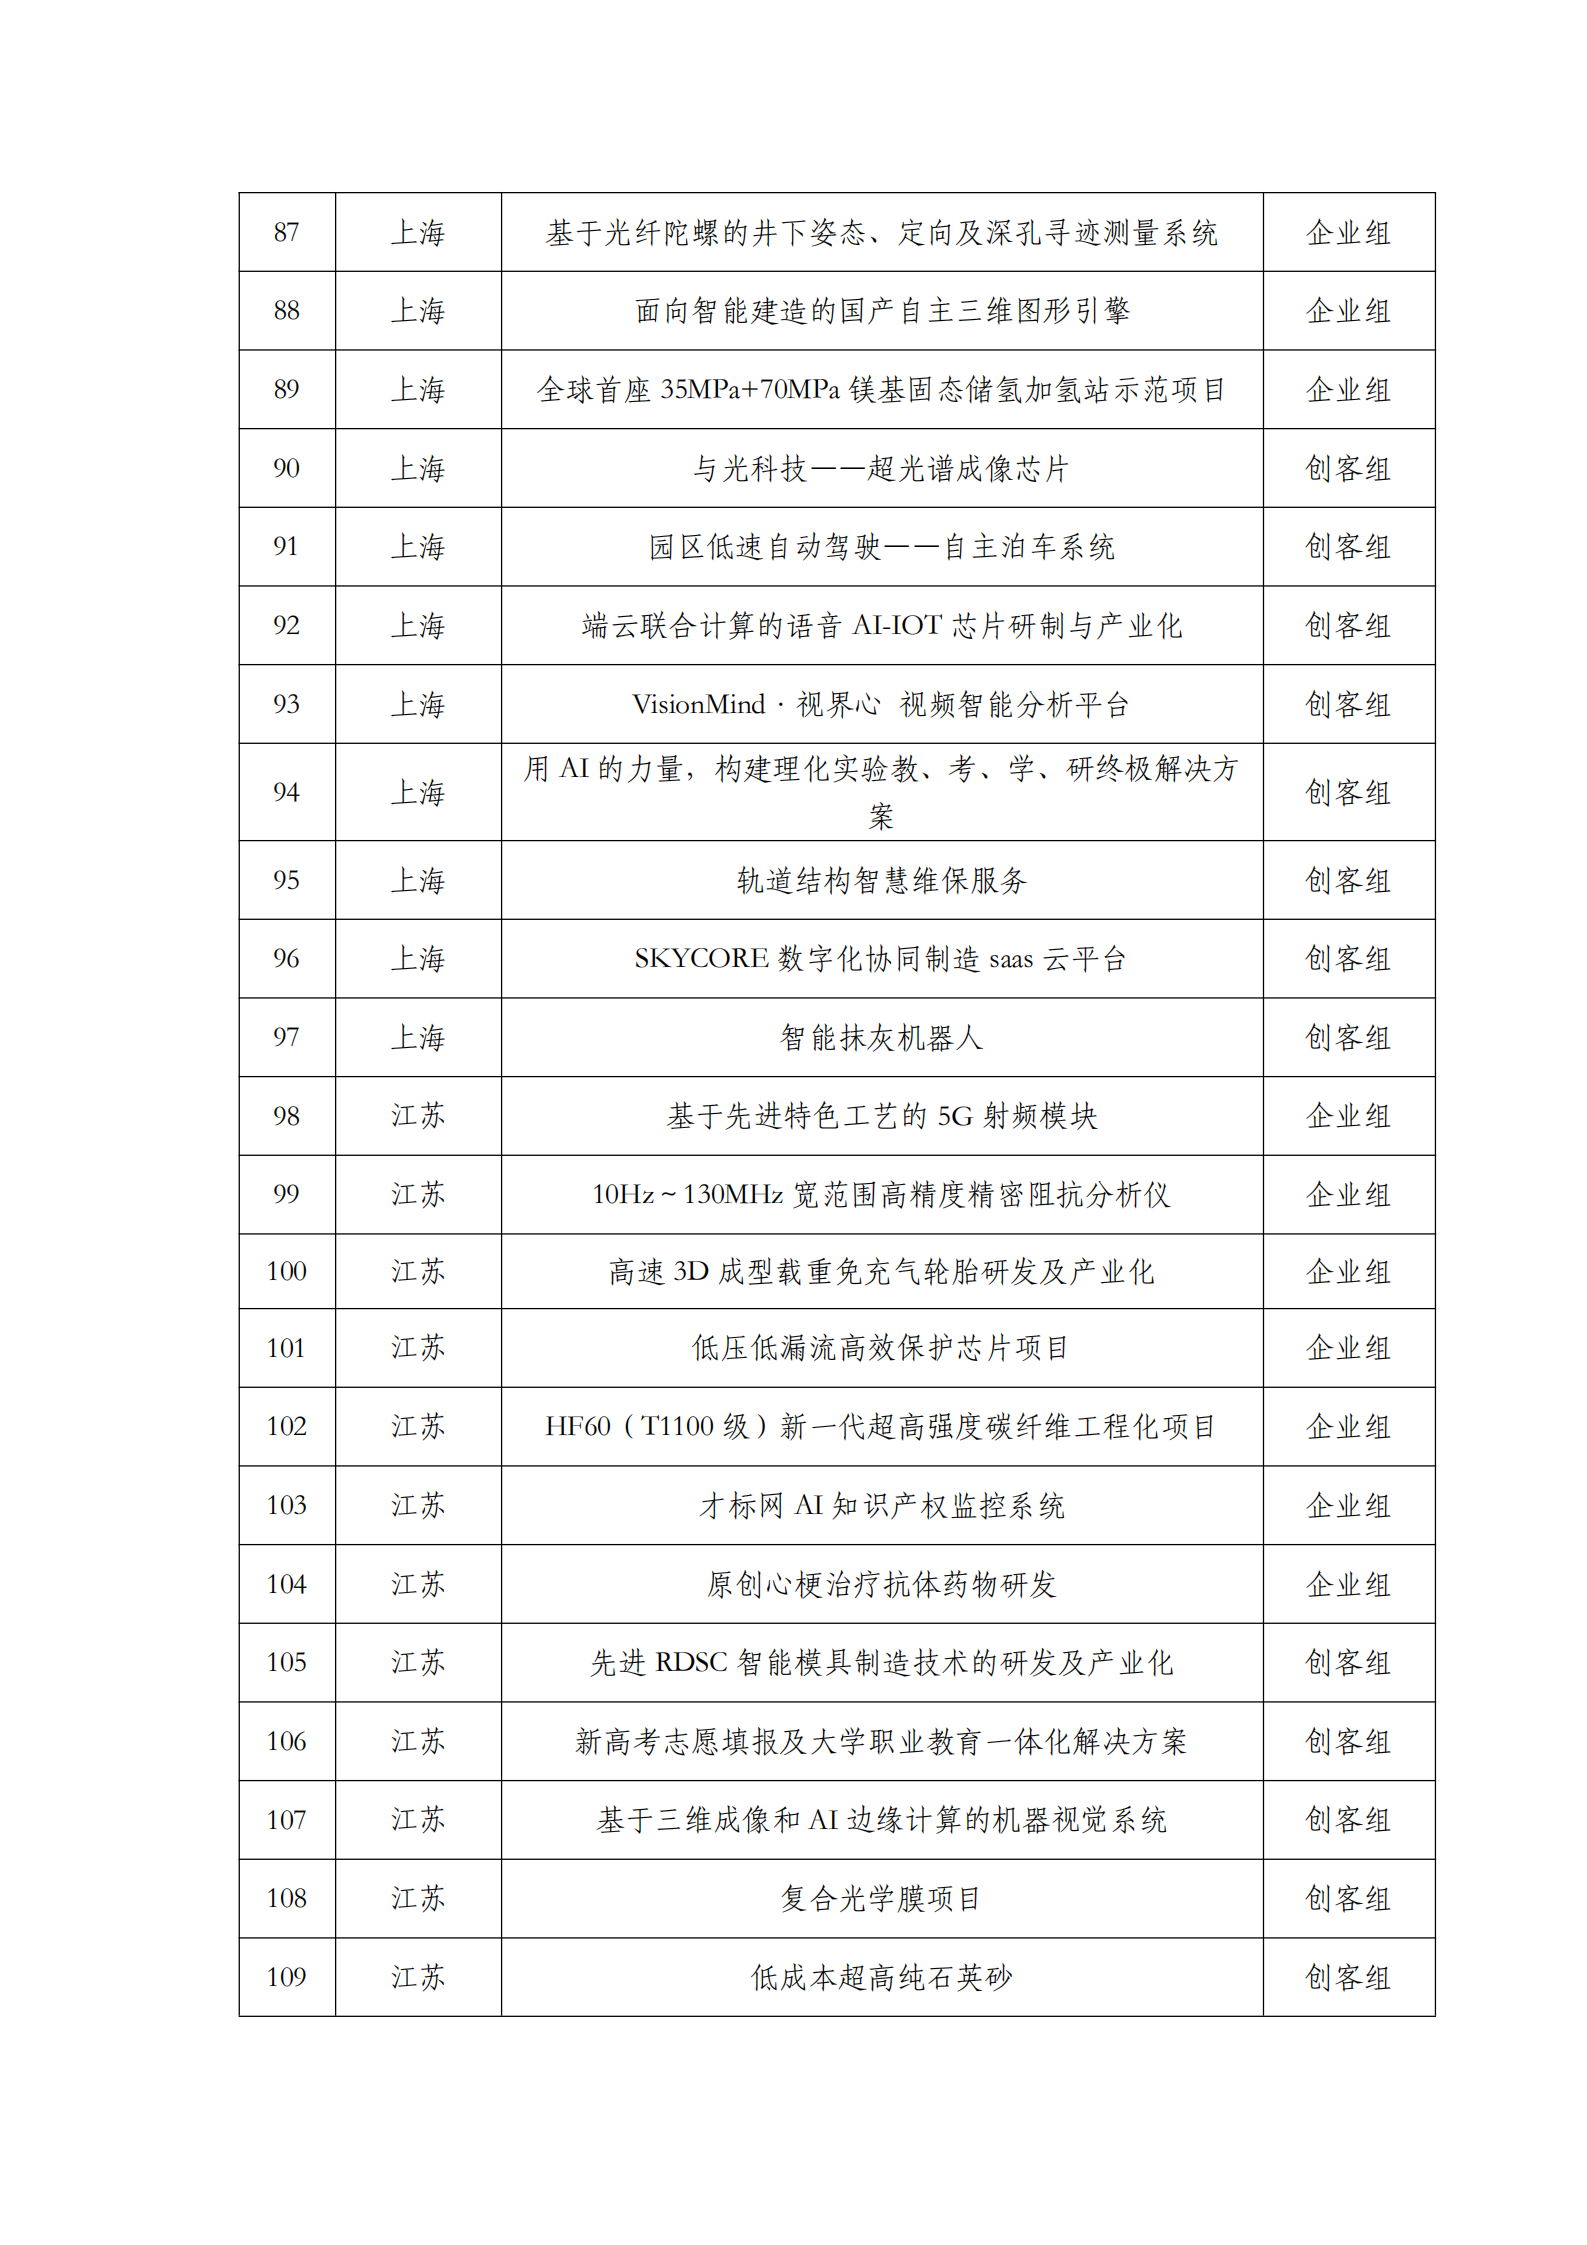 第六届“创客中国”中小企业创新创业大赛500强公示名单_04.png